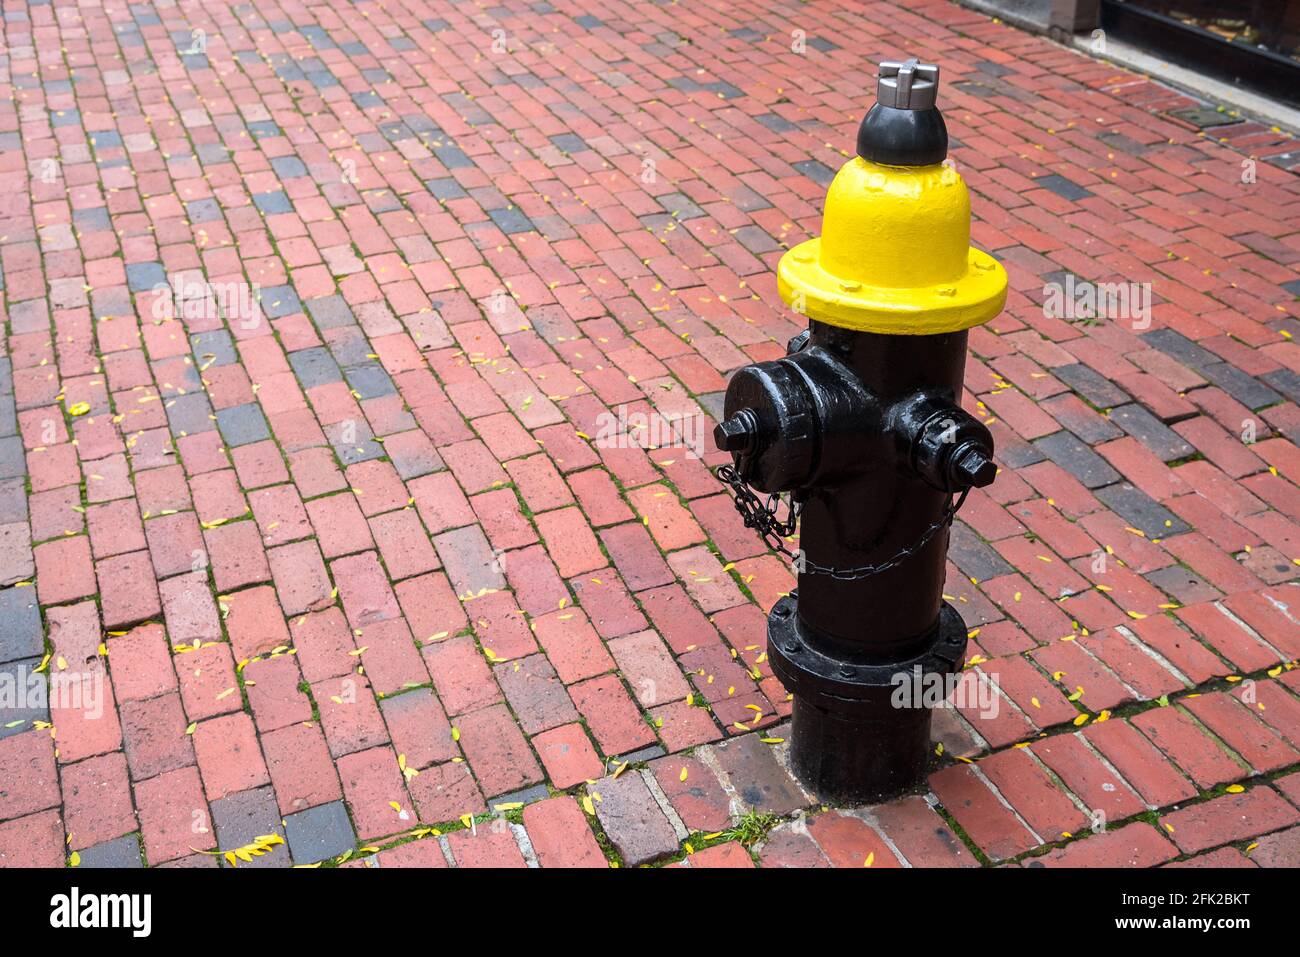 Schwarzer und gelber Hydrant auf einem roten Ziegelsteinsteig In einer Innenstadt Stockfoto